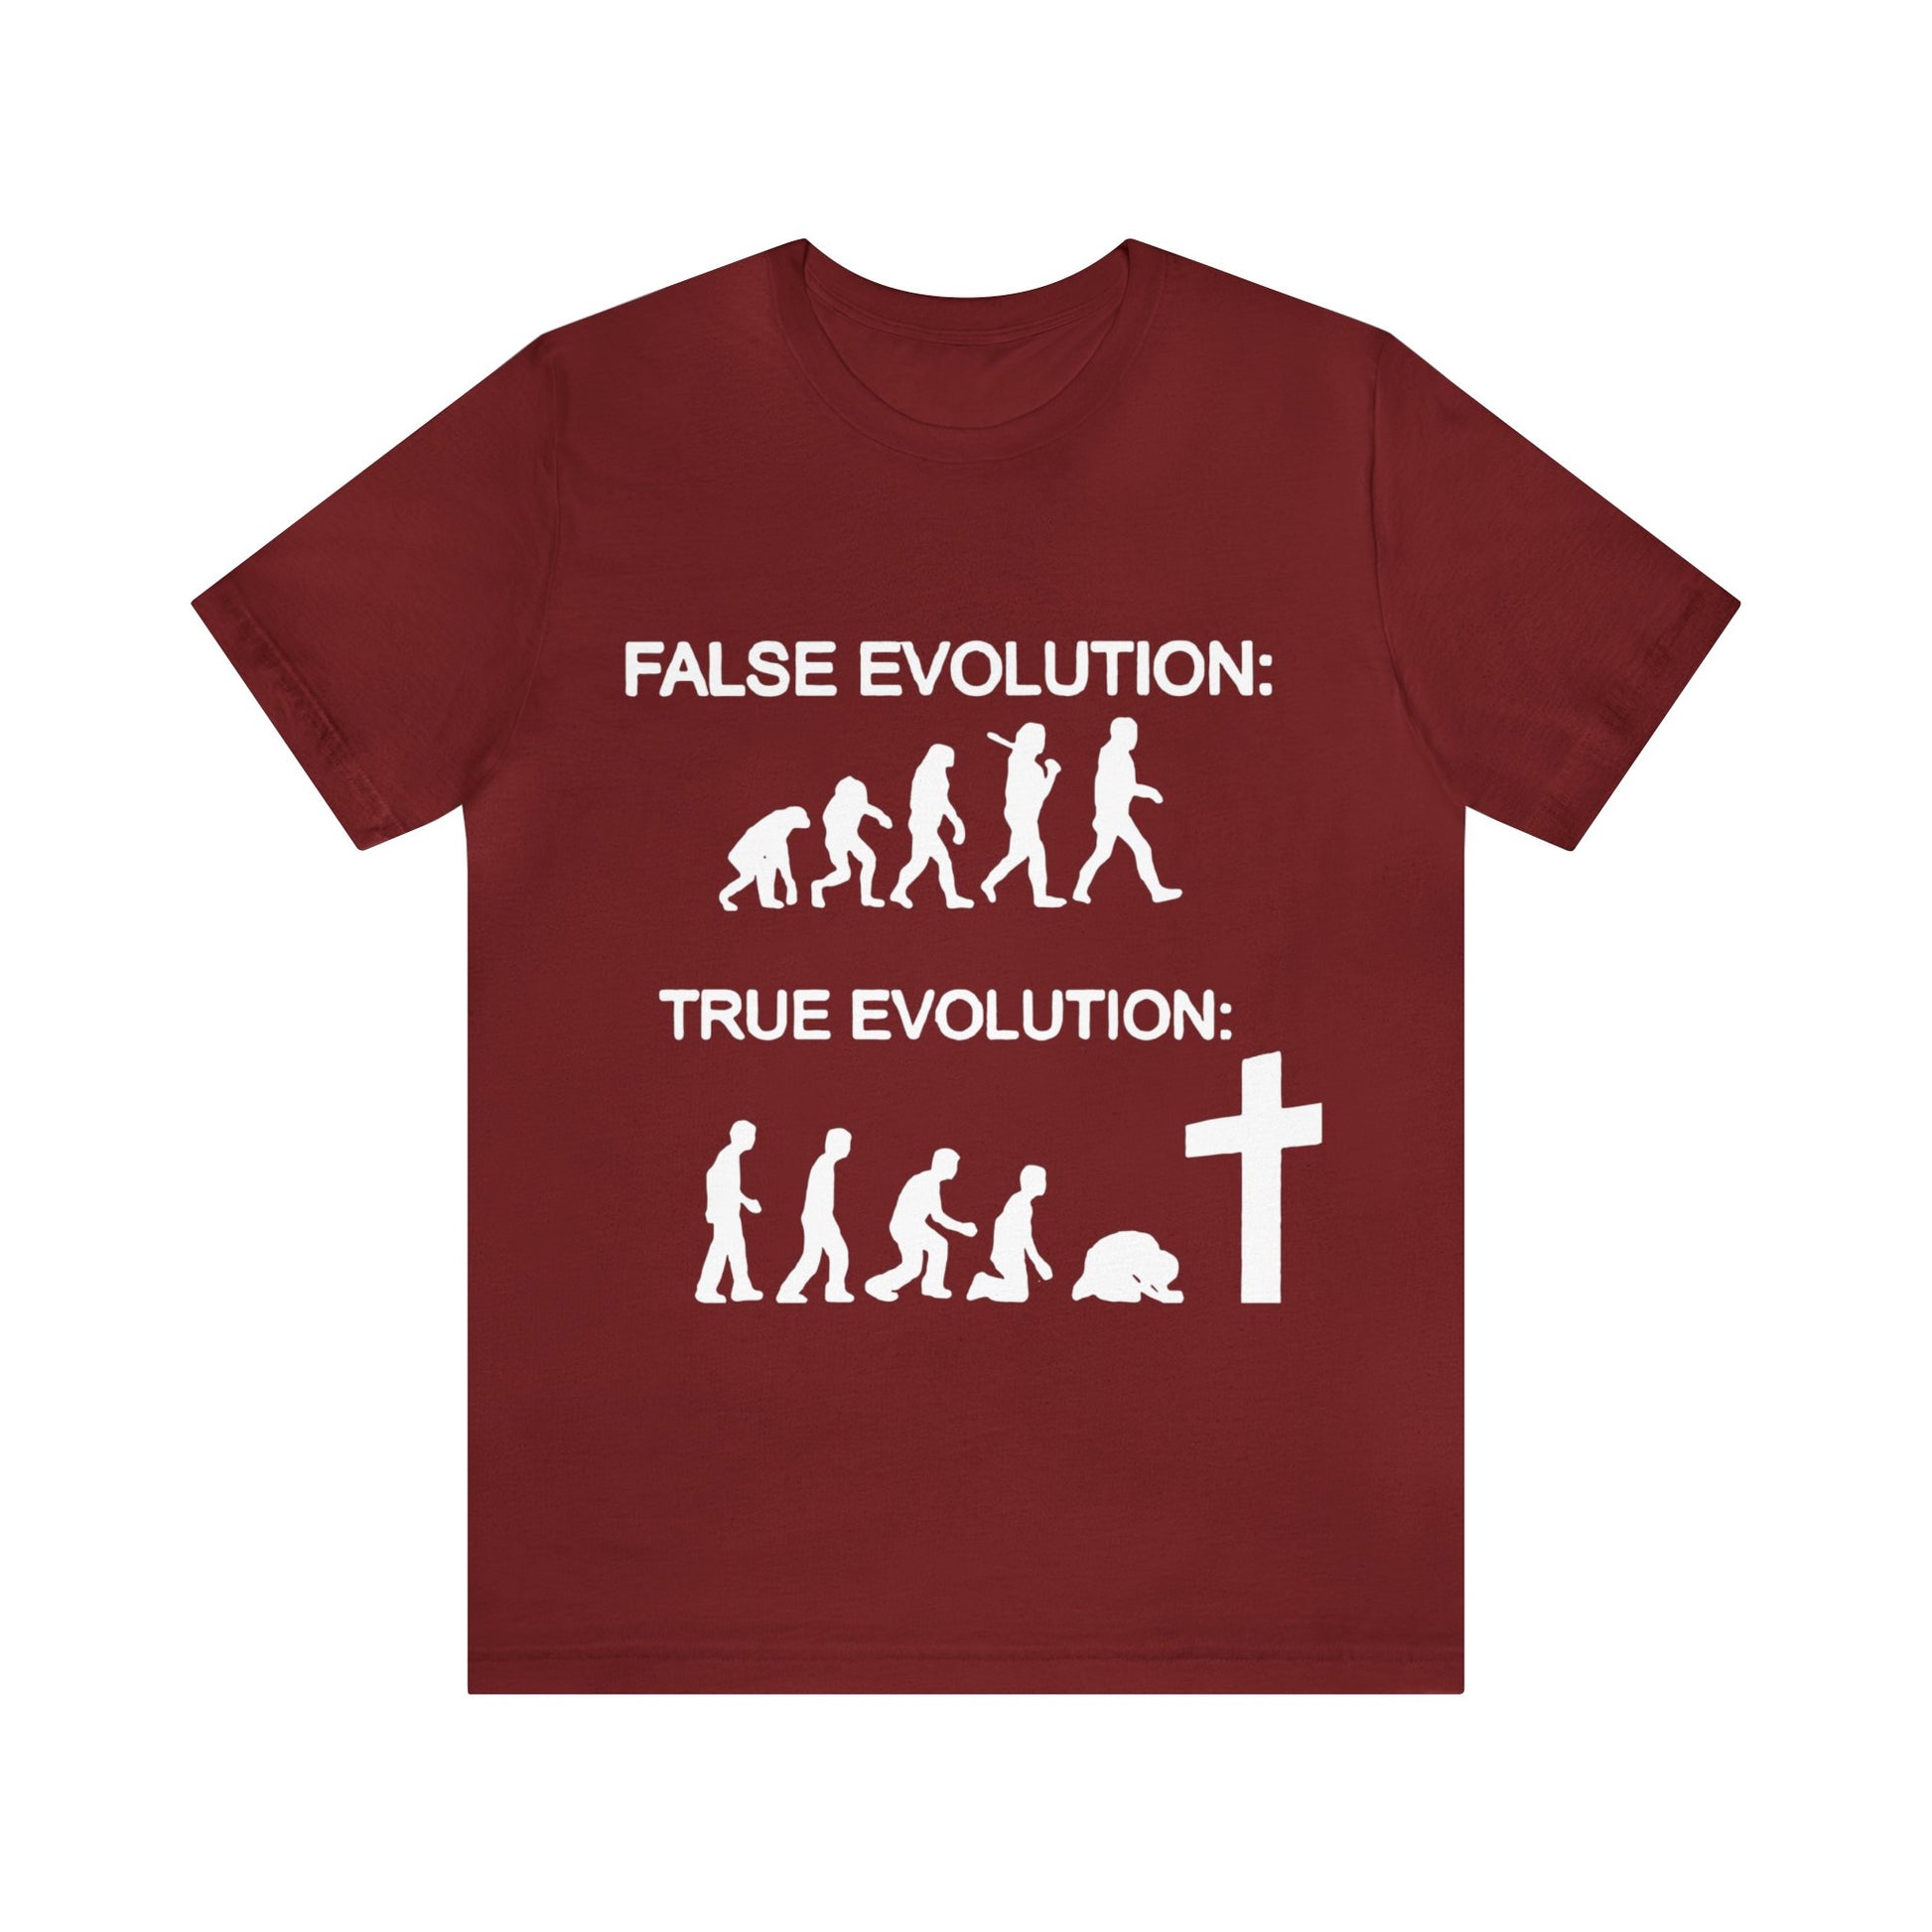 False evolution versus True evolution T-Shirt